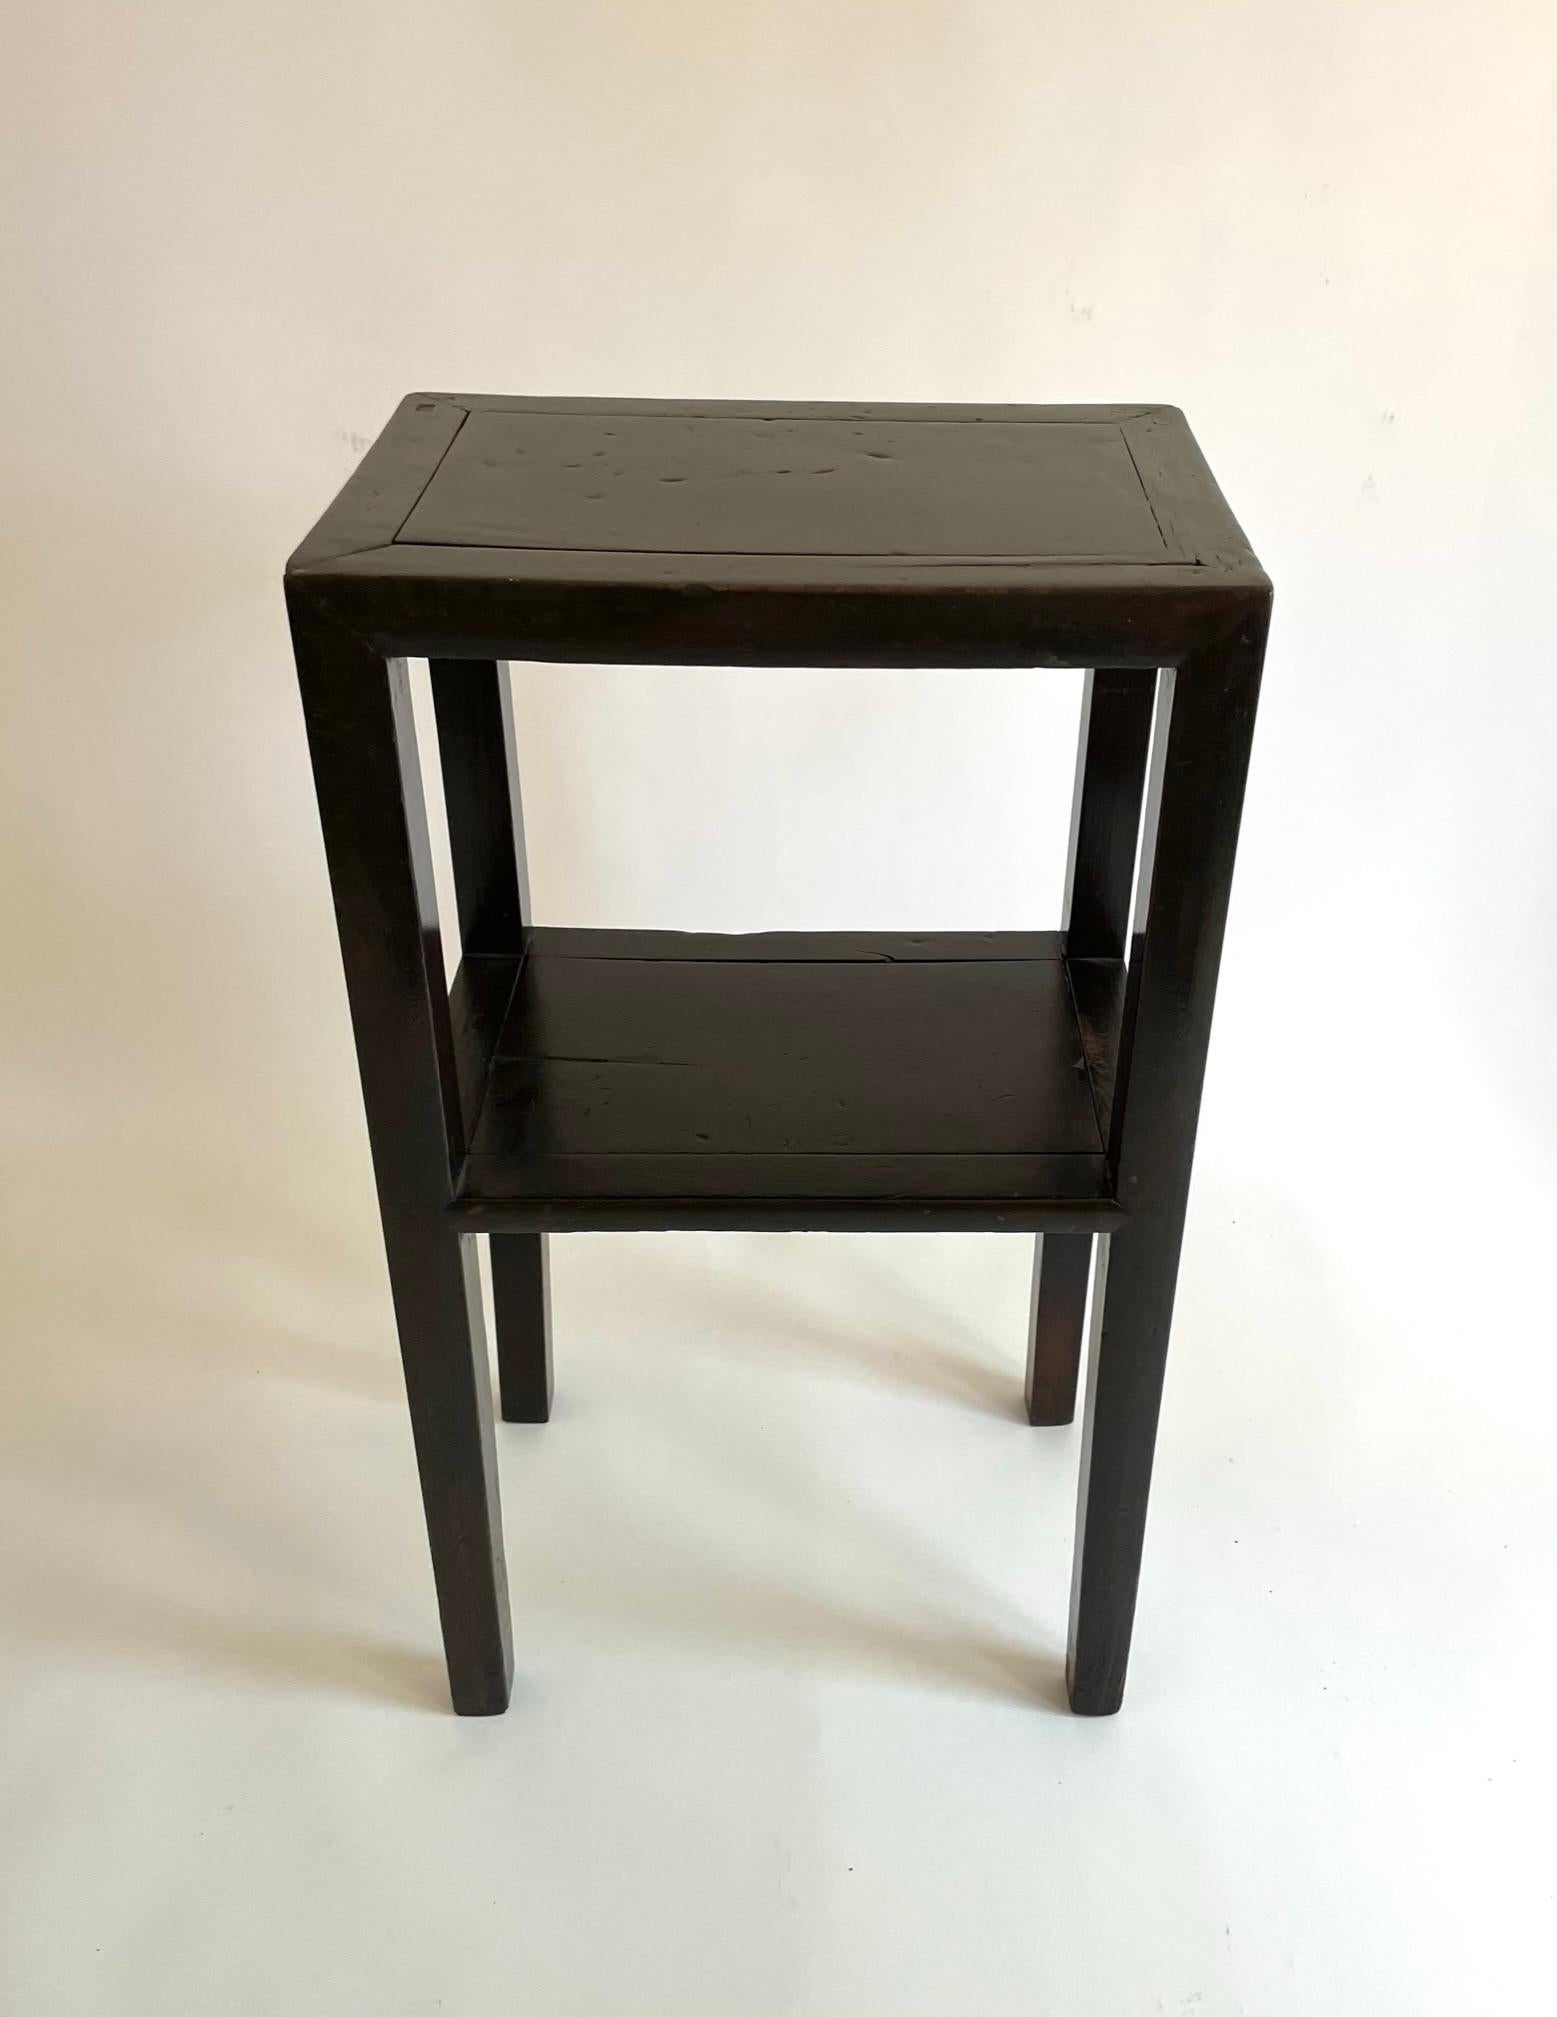 Belle table à thé chinoise en bois noir (Hongmu), bien proportionnée. Le bois noir de cette table est de couleur brun foncé. Le Hongmu a généralement une teinte plus rougeâtre, et la teinte foncée est plus souhaitable. Cette table est construite